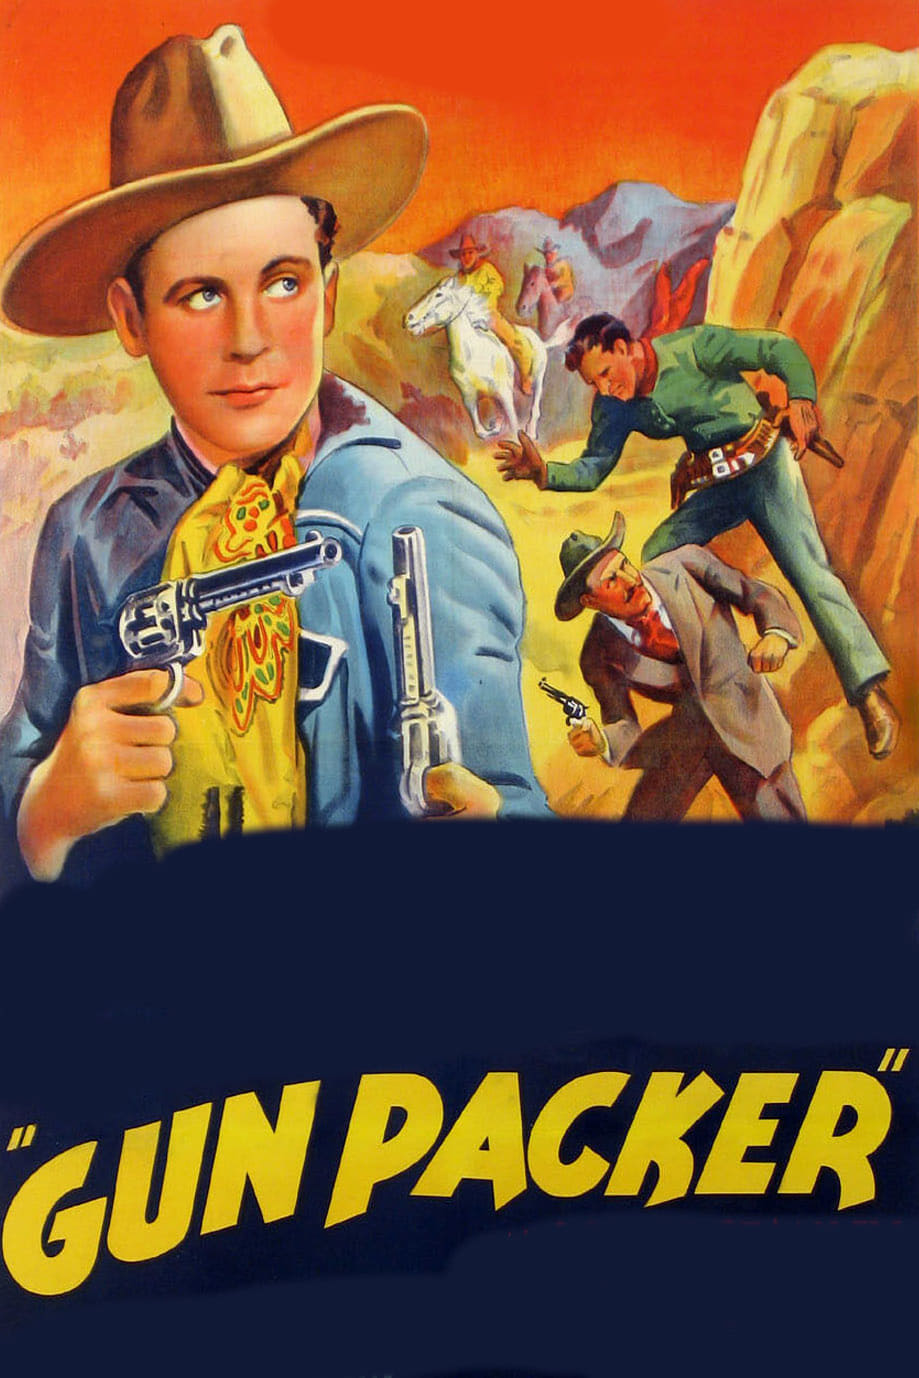 Gun Packer